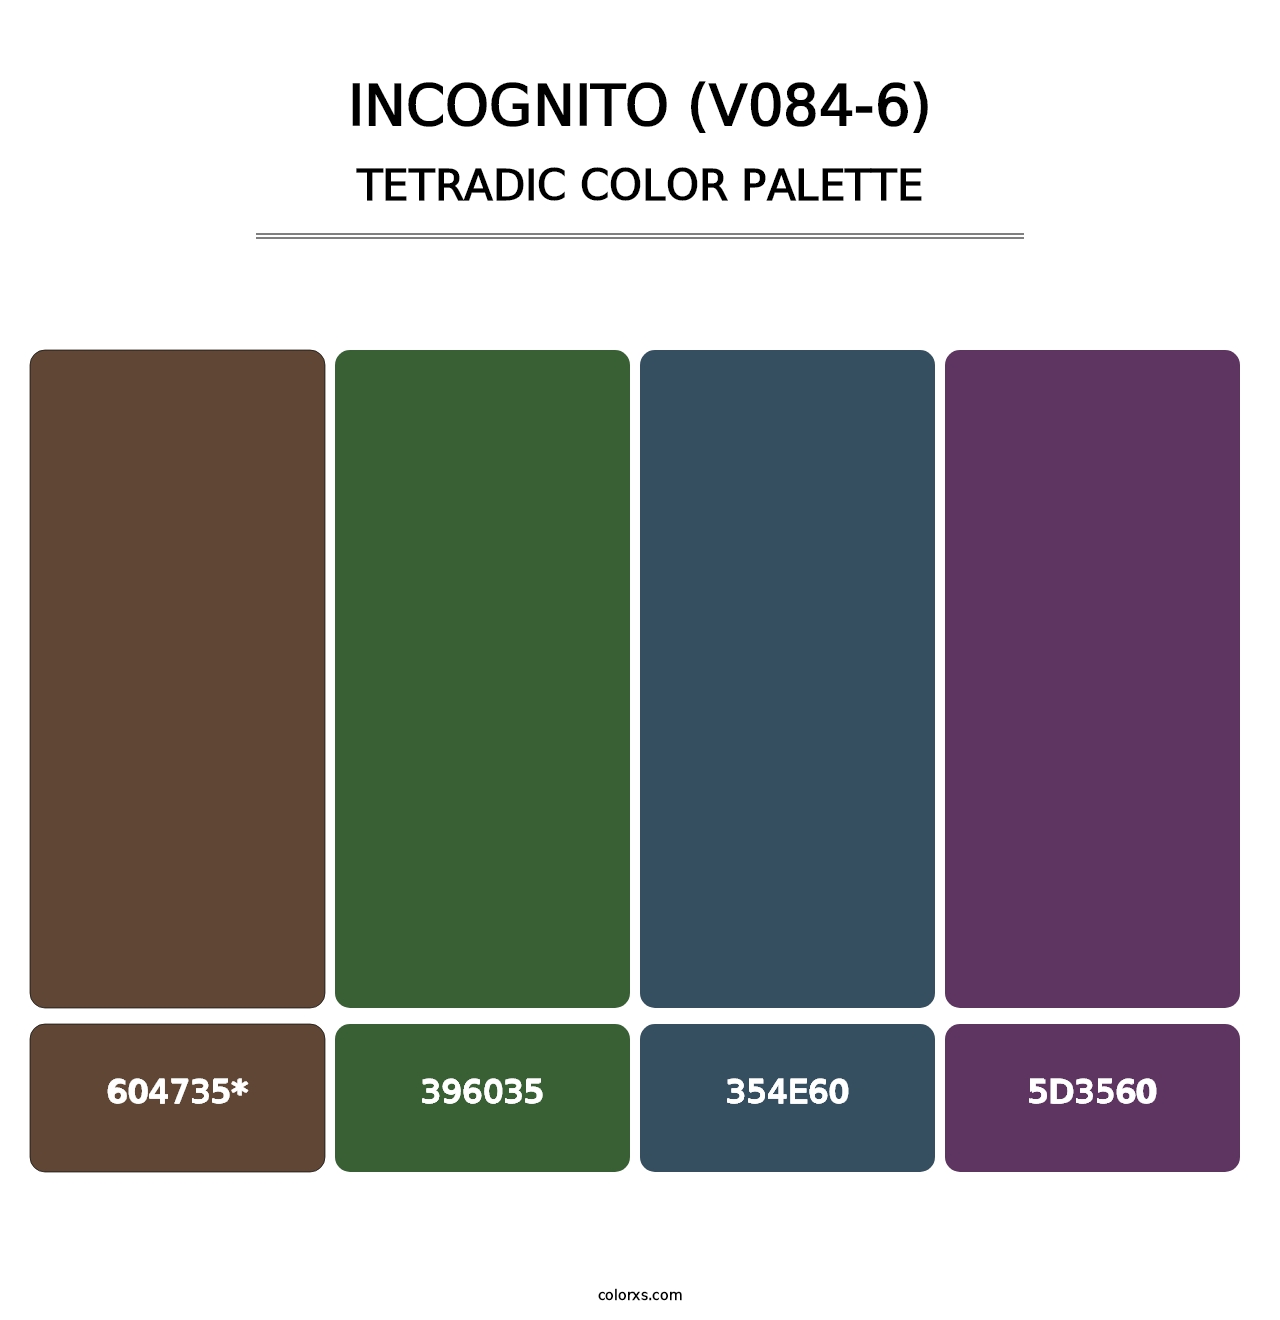 Incognito (V084-6) - Tetradic Color Palette